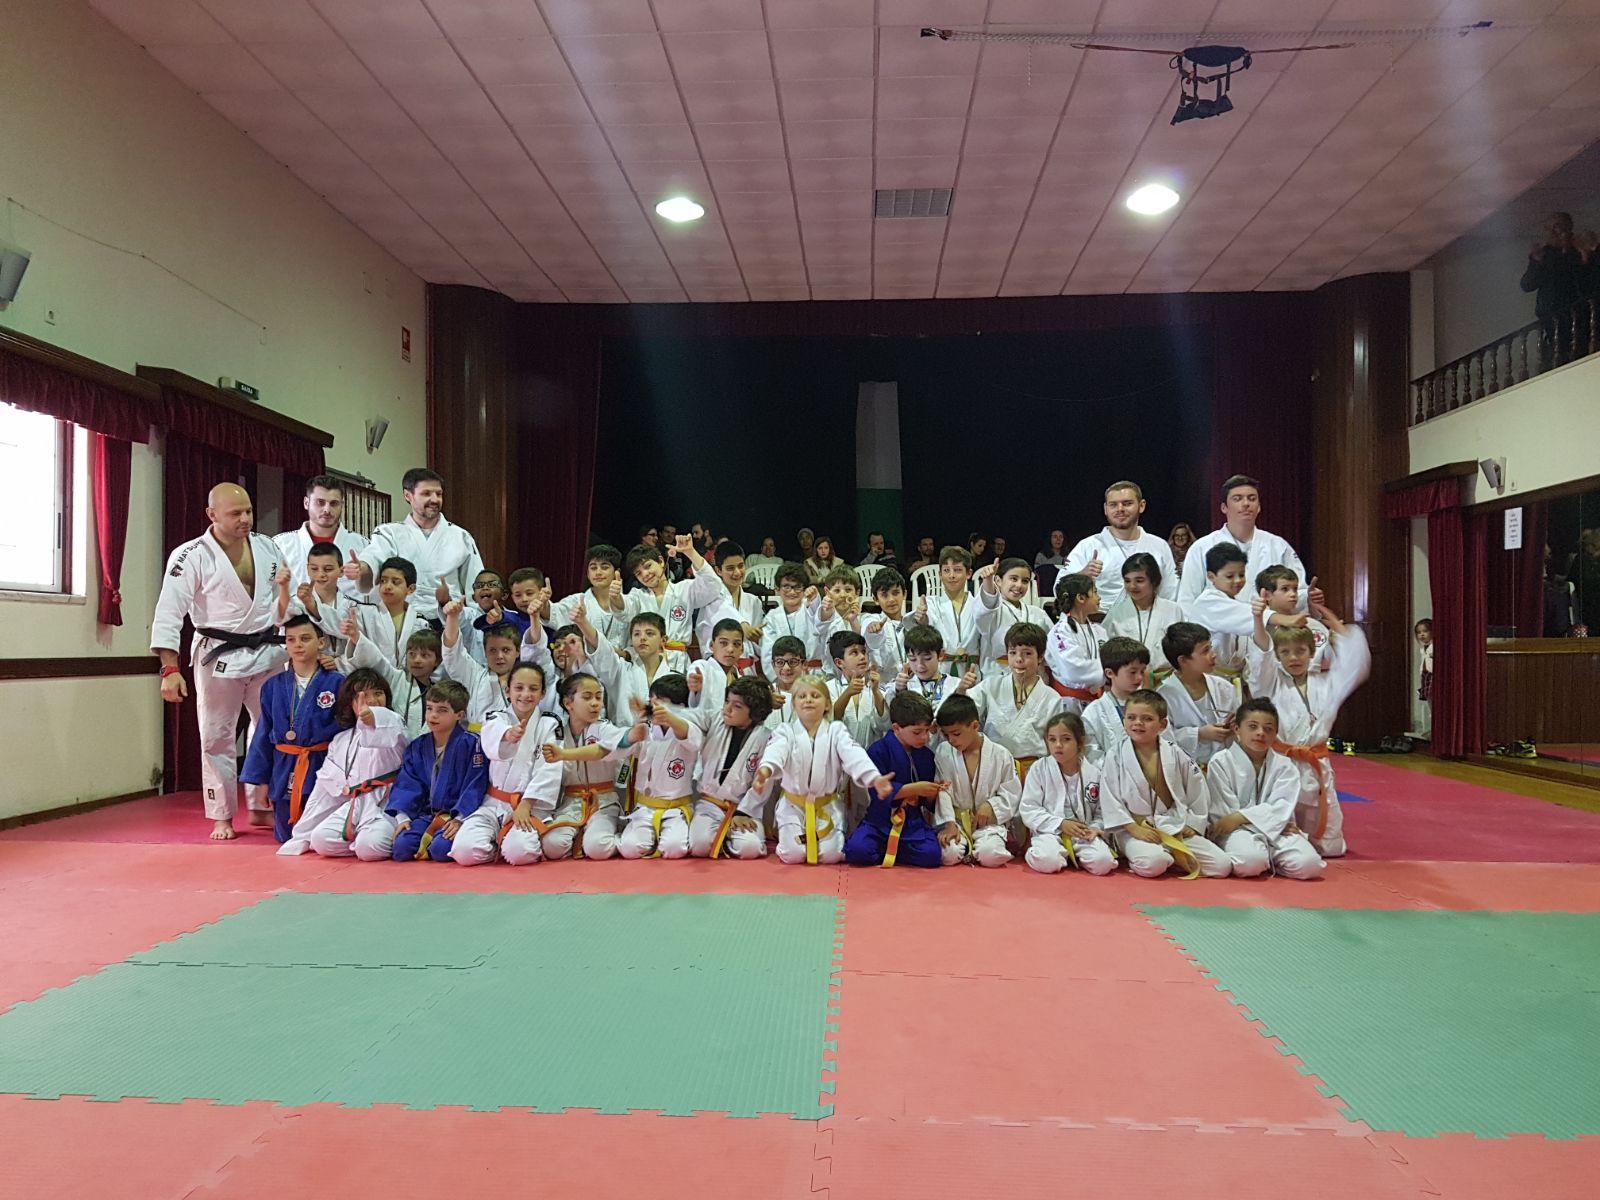 Torneio Municipal de Judo reuniu 38 participantes de 4 clubes no Bairro Alentejano